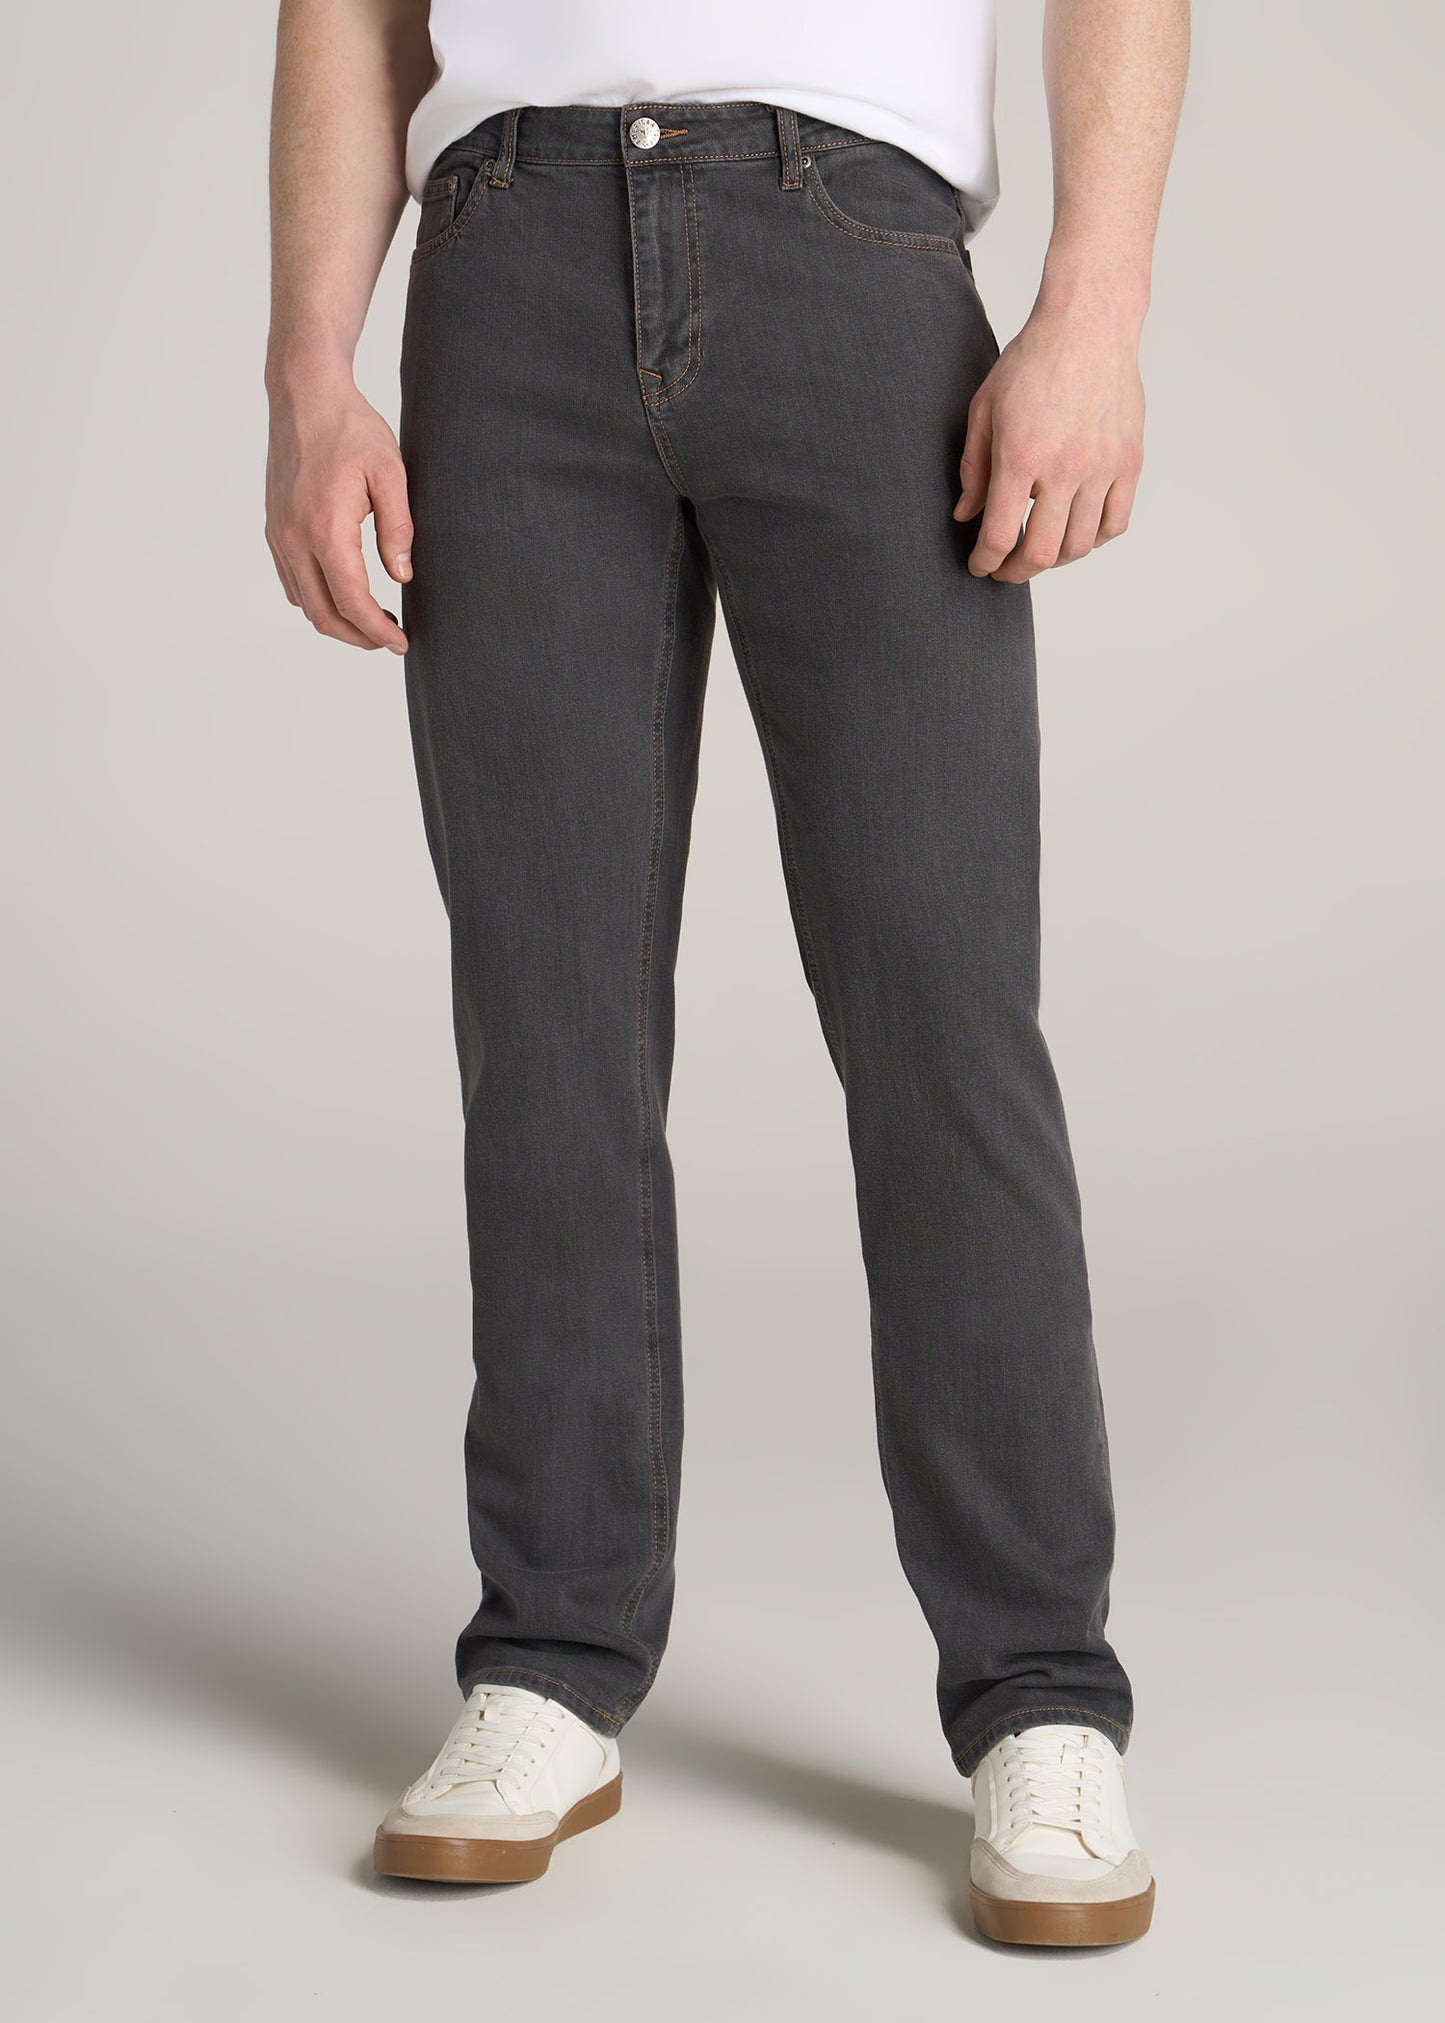 Grey Denim J1 Straight Leg Tall Men's Jeans | American Tall